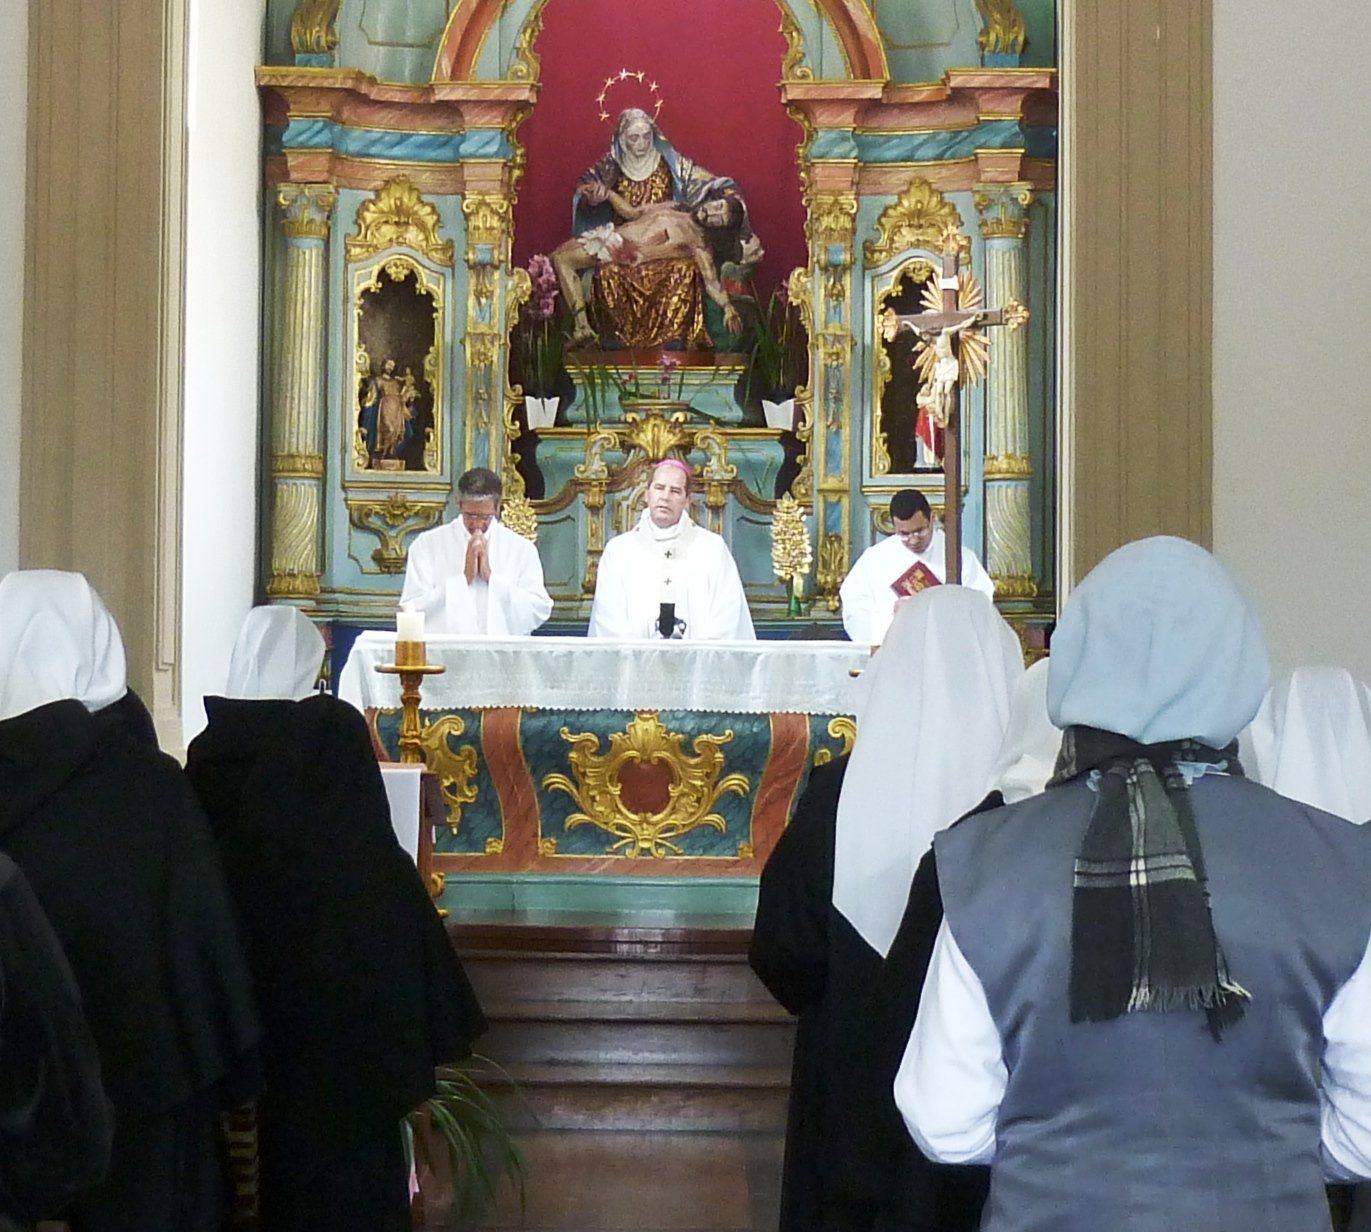 4 de maio: Rede Vida transmite Missa do Santuário Nossa Senhora da Piedade